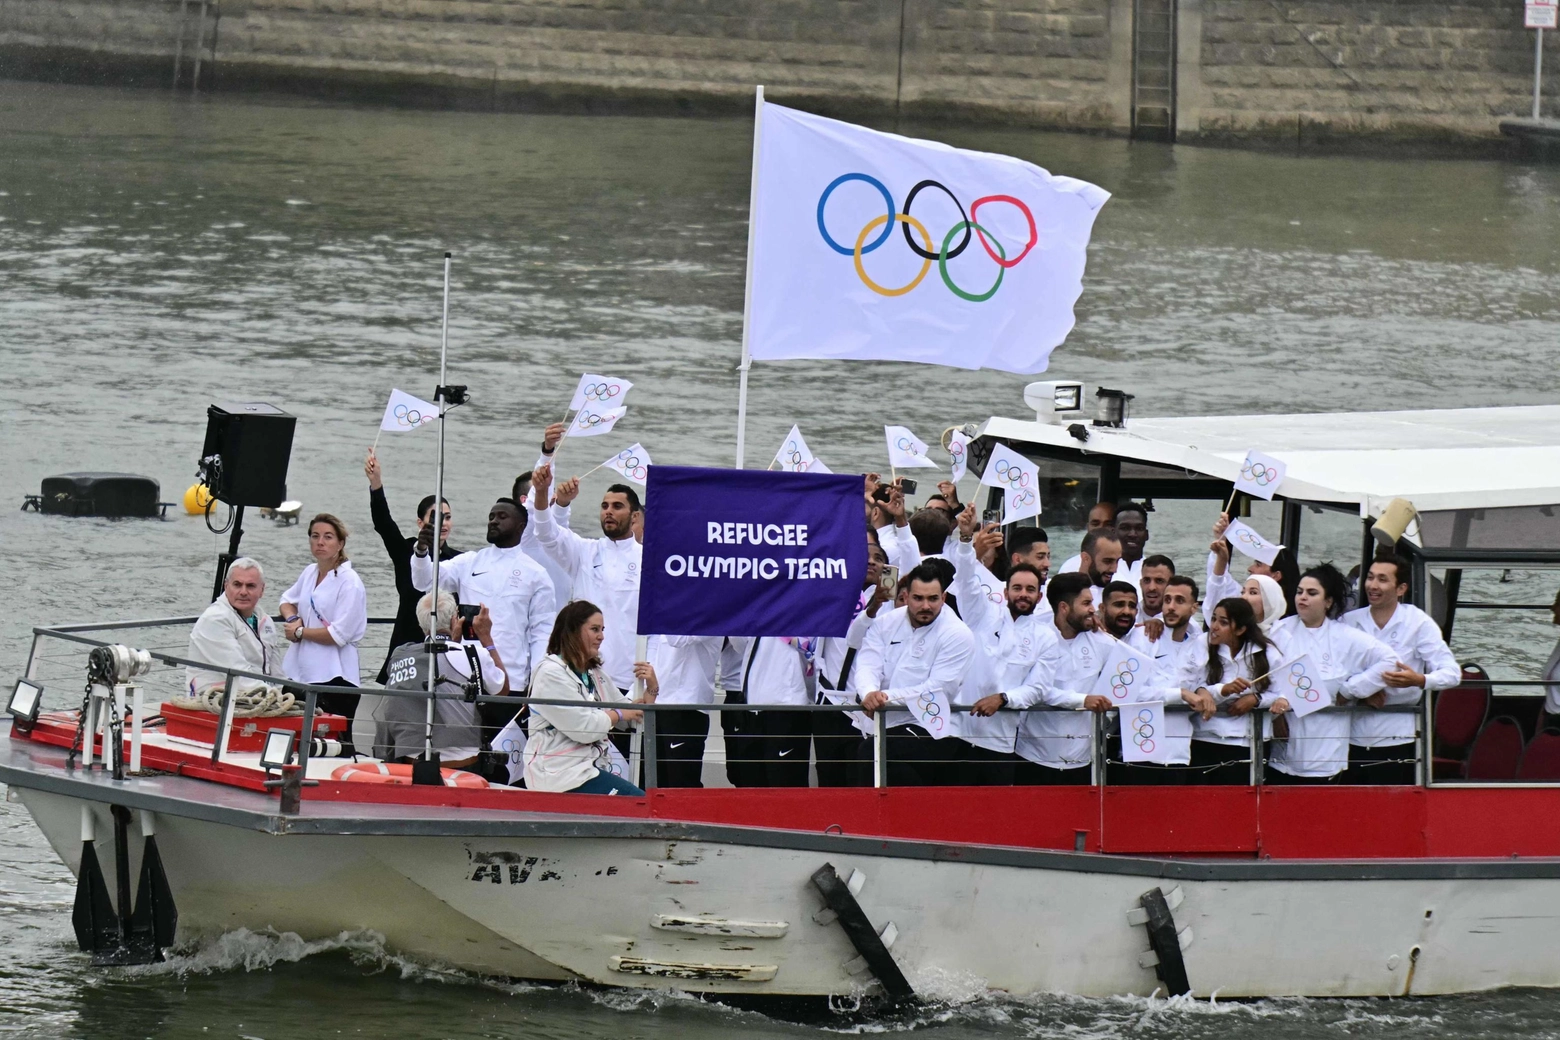 La barca che ospita la delegazione dei rifugiati olimpici